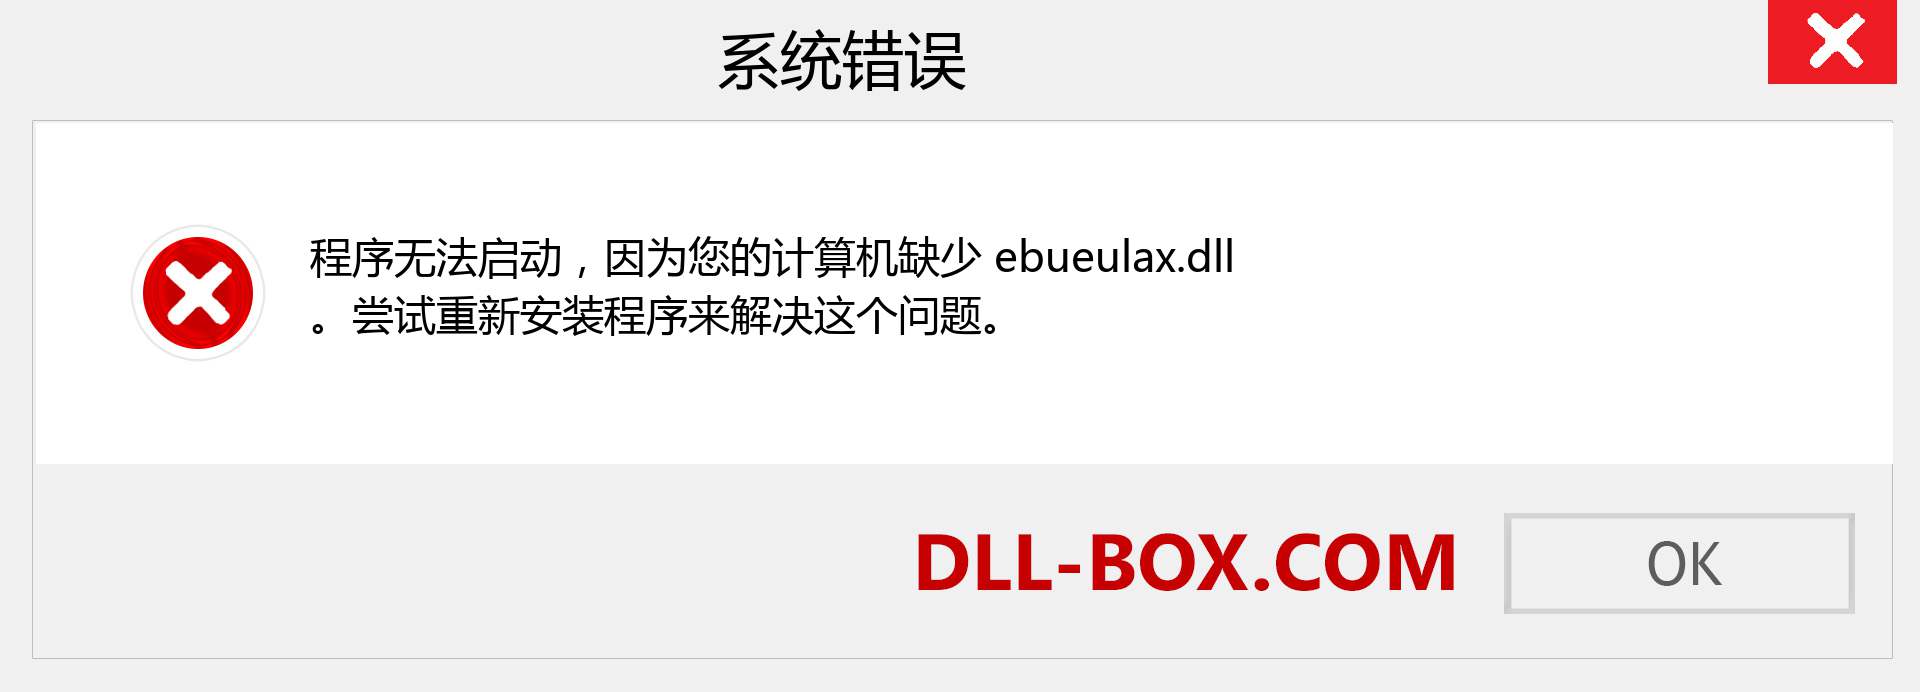 ebueulax.dll 文件丢失？。 适用于 Windows 7、8、10 的下载 - 修复 Windows、照片、图像上的 ebueulax dll 丢失错误